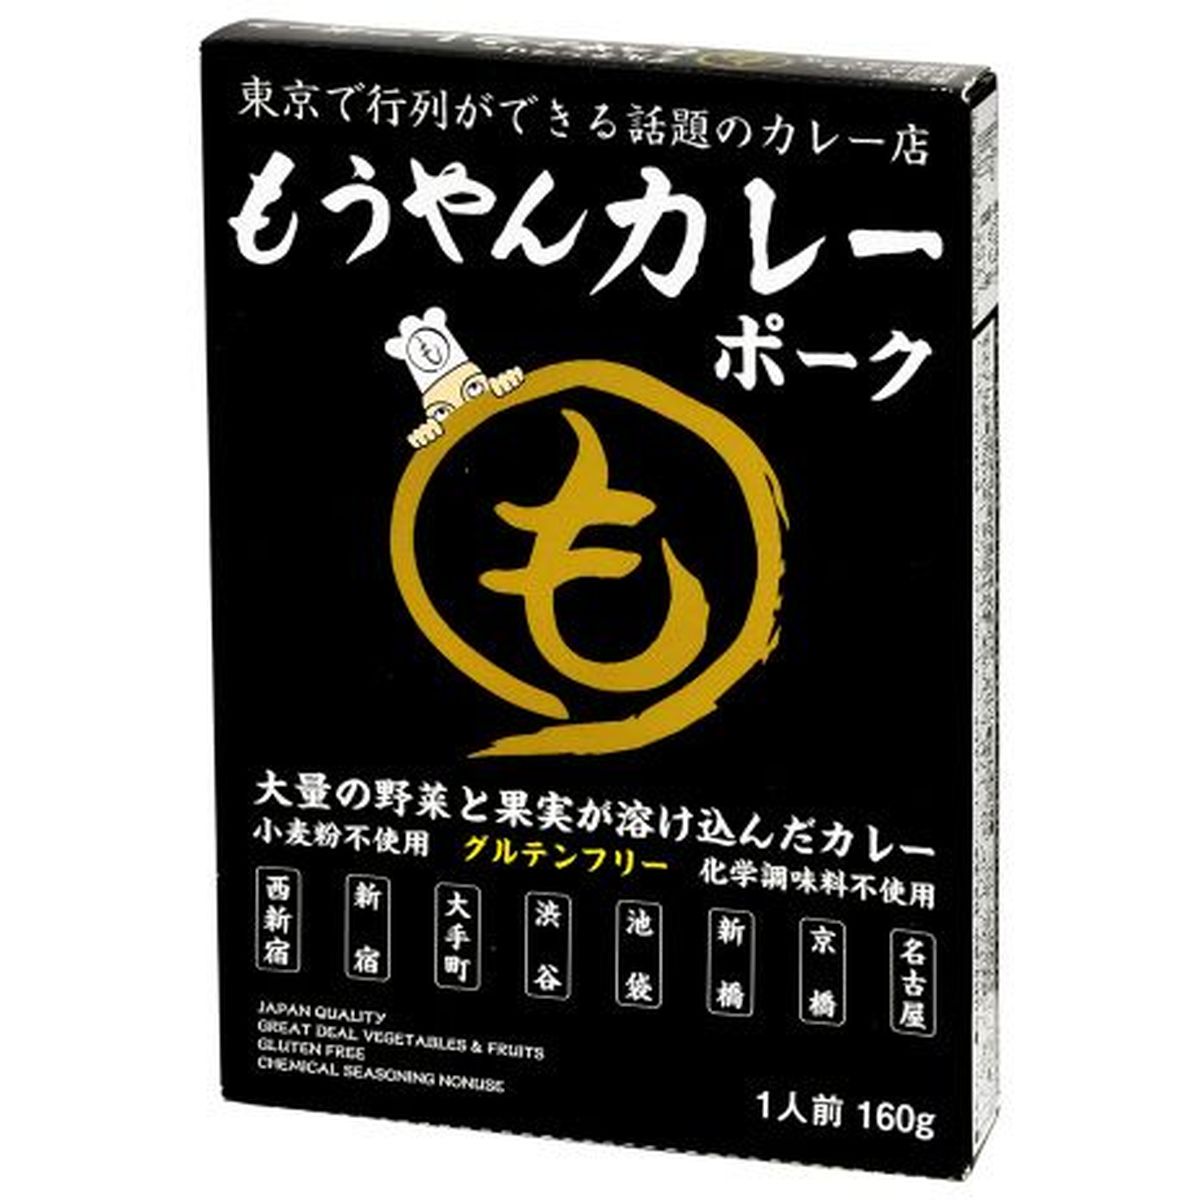 【10個入リ】コスモ食品 モウヤンポークカレーレトルト 160g